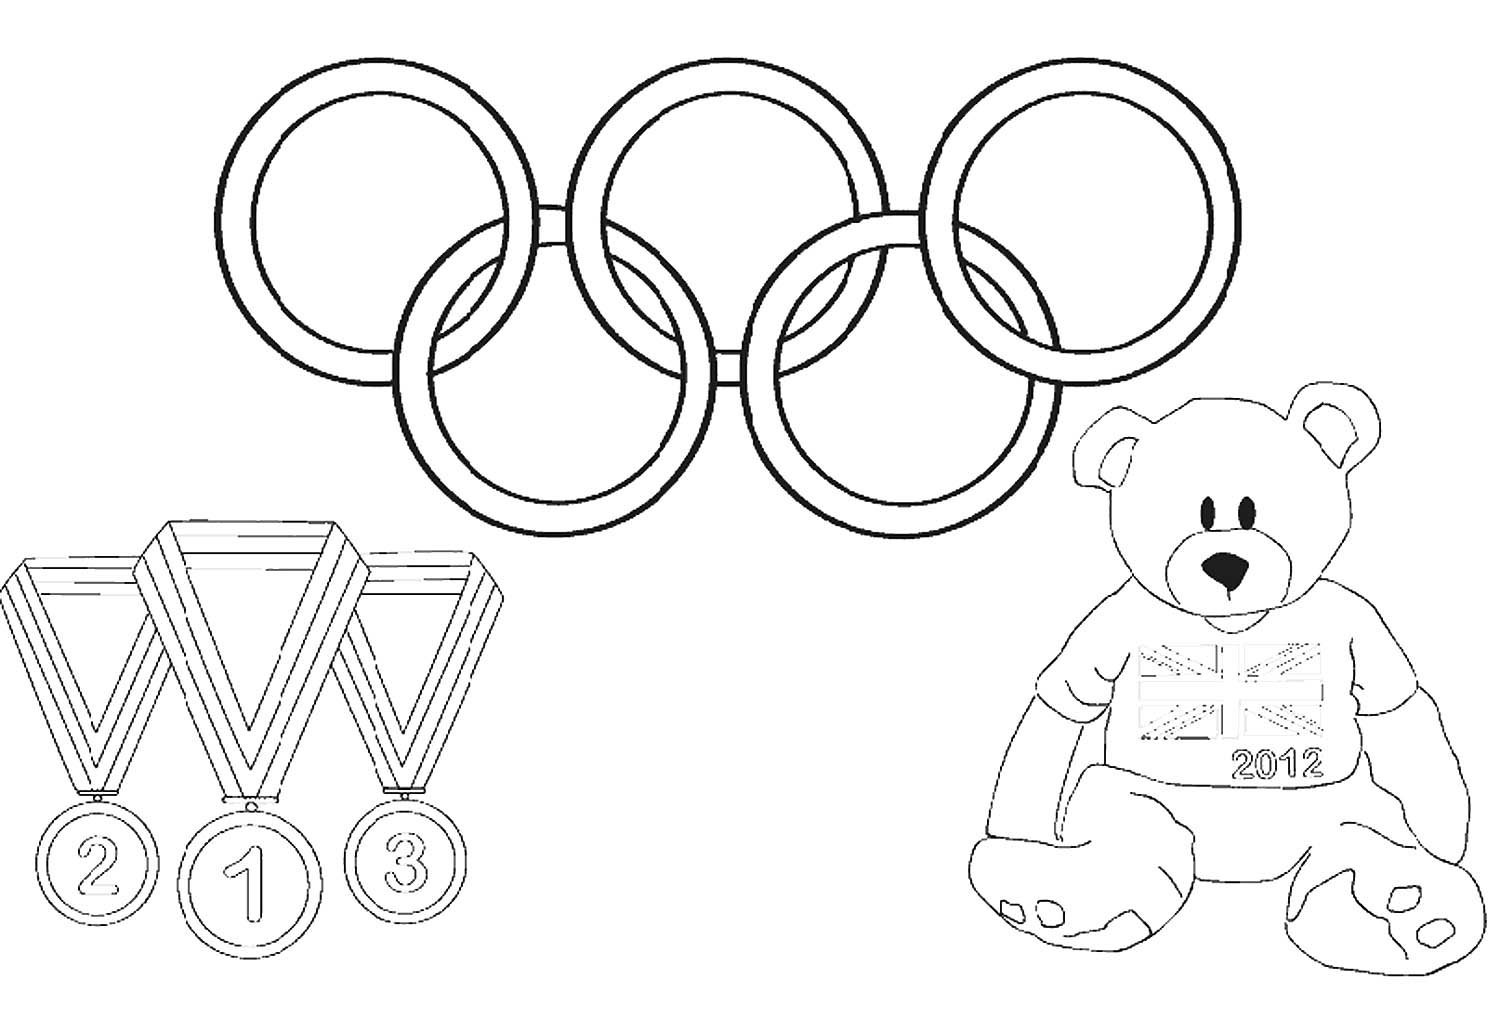 Рисование 4 класс олимпийские игры. Раскраска на тему Олимпийские игры. Олимпийские игры рисунок. Раскраска Олимпийские игры для детей. Олимпийские кольца раскраска.